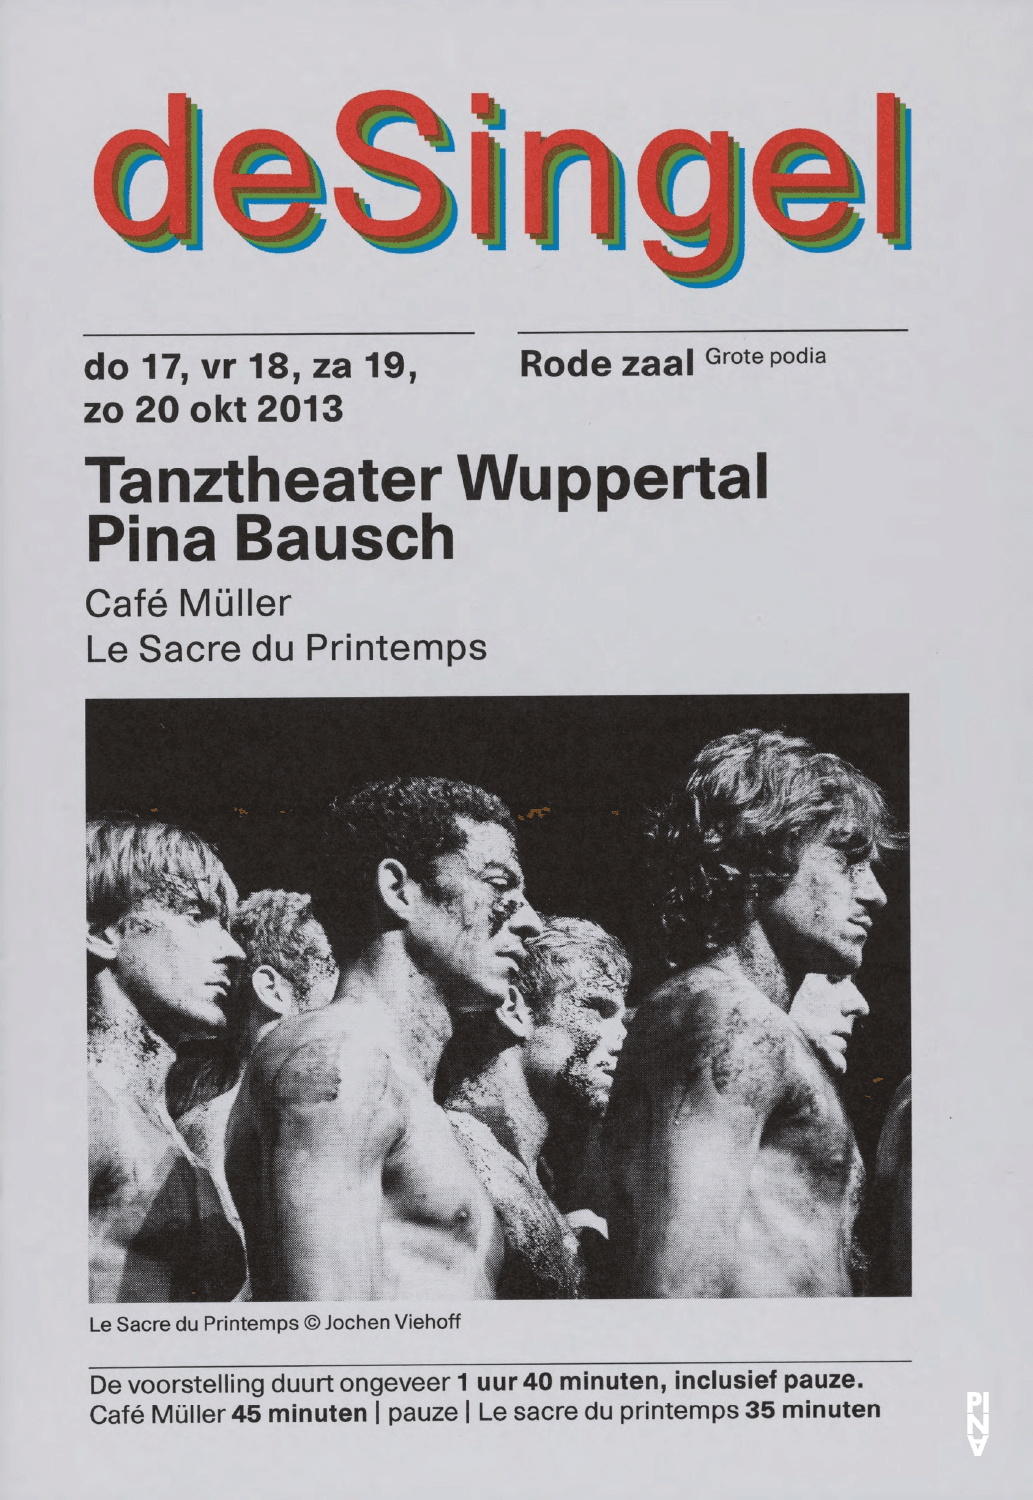 Programme pour « Café Müller » et « Le Sacre du printemps » de Pina Bausch avec Tanztheater Wuppertal à Anvers, 17 oct. 2013 – 20 oct. 2013